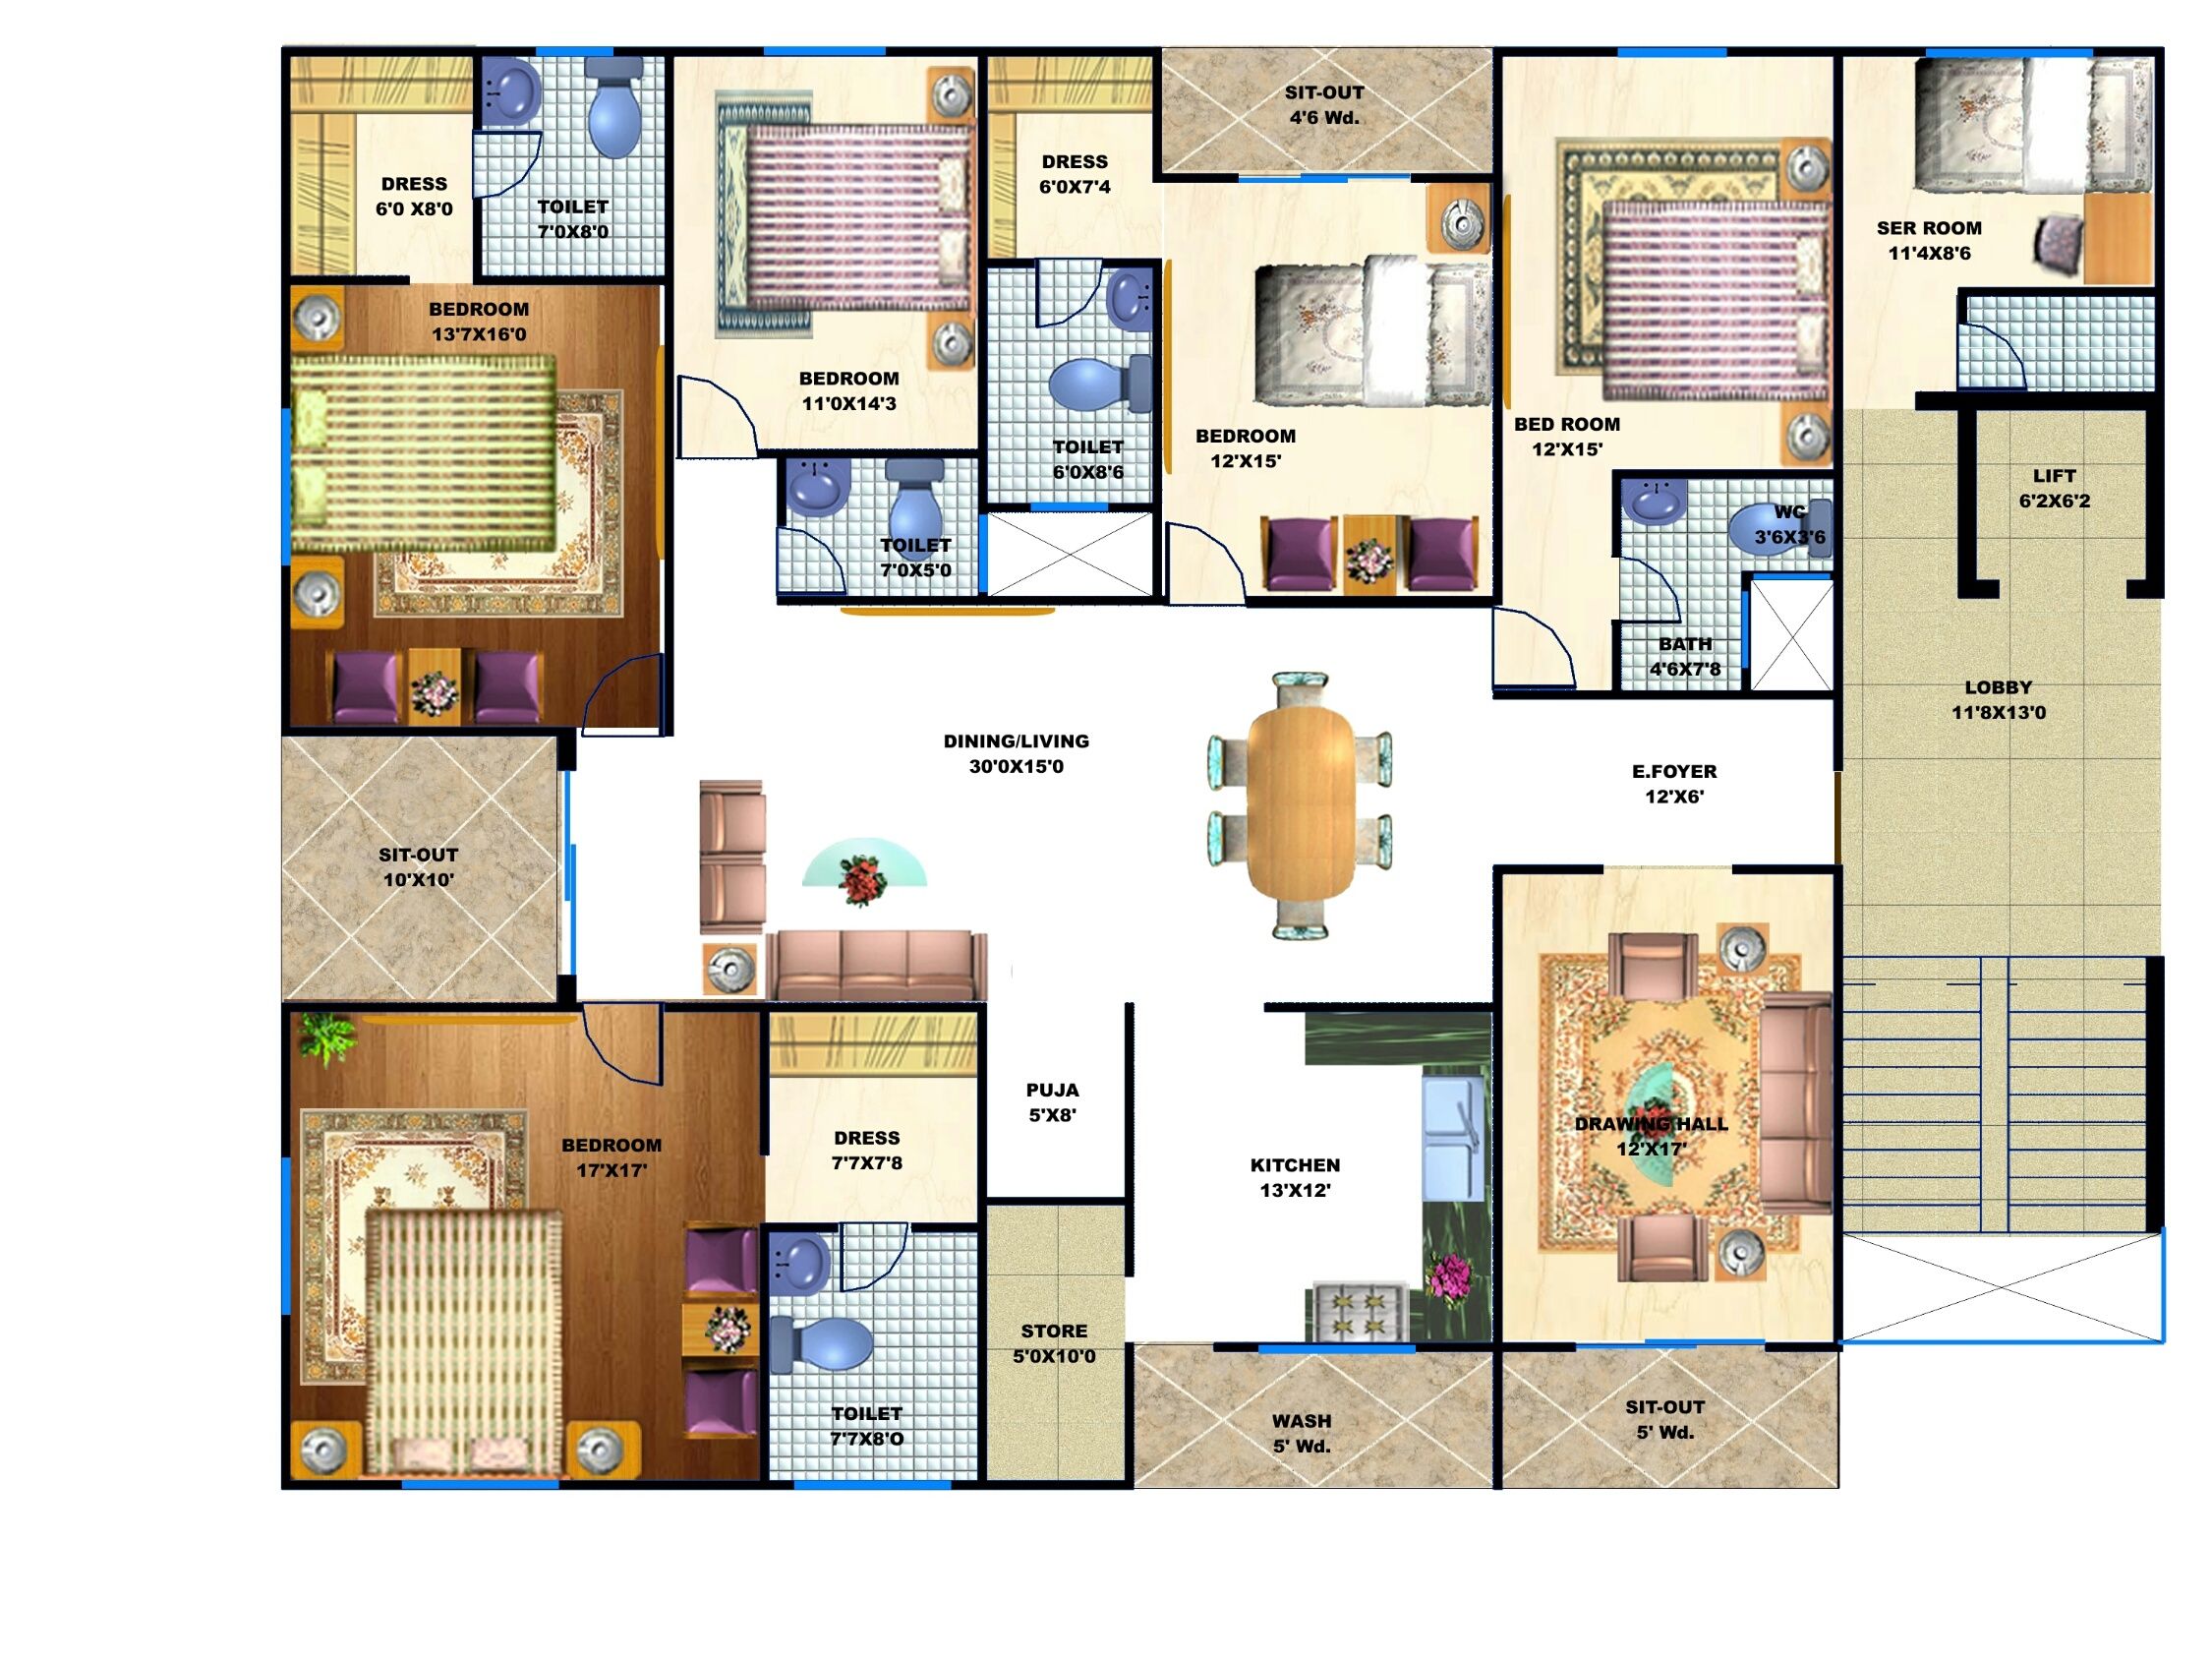 5 BHK Apartment Floor Plan apartmentinindore, 